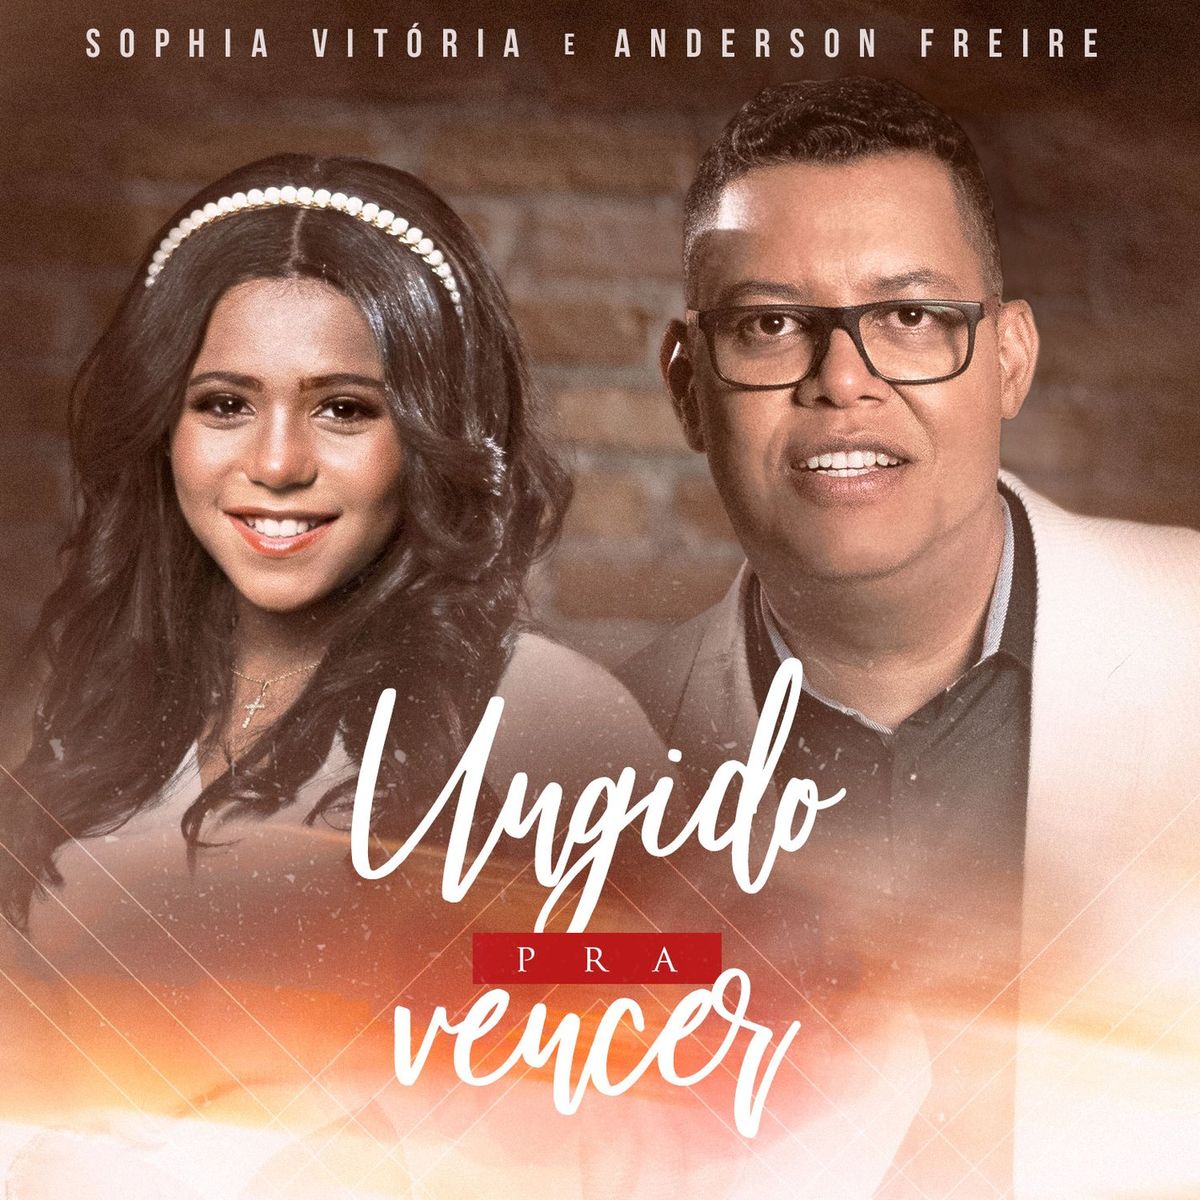 Sophia Vitória & Anderson Freire - Ungido Pra Vencer